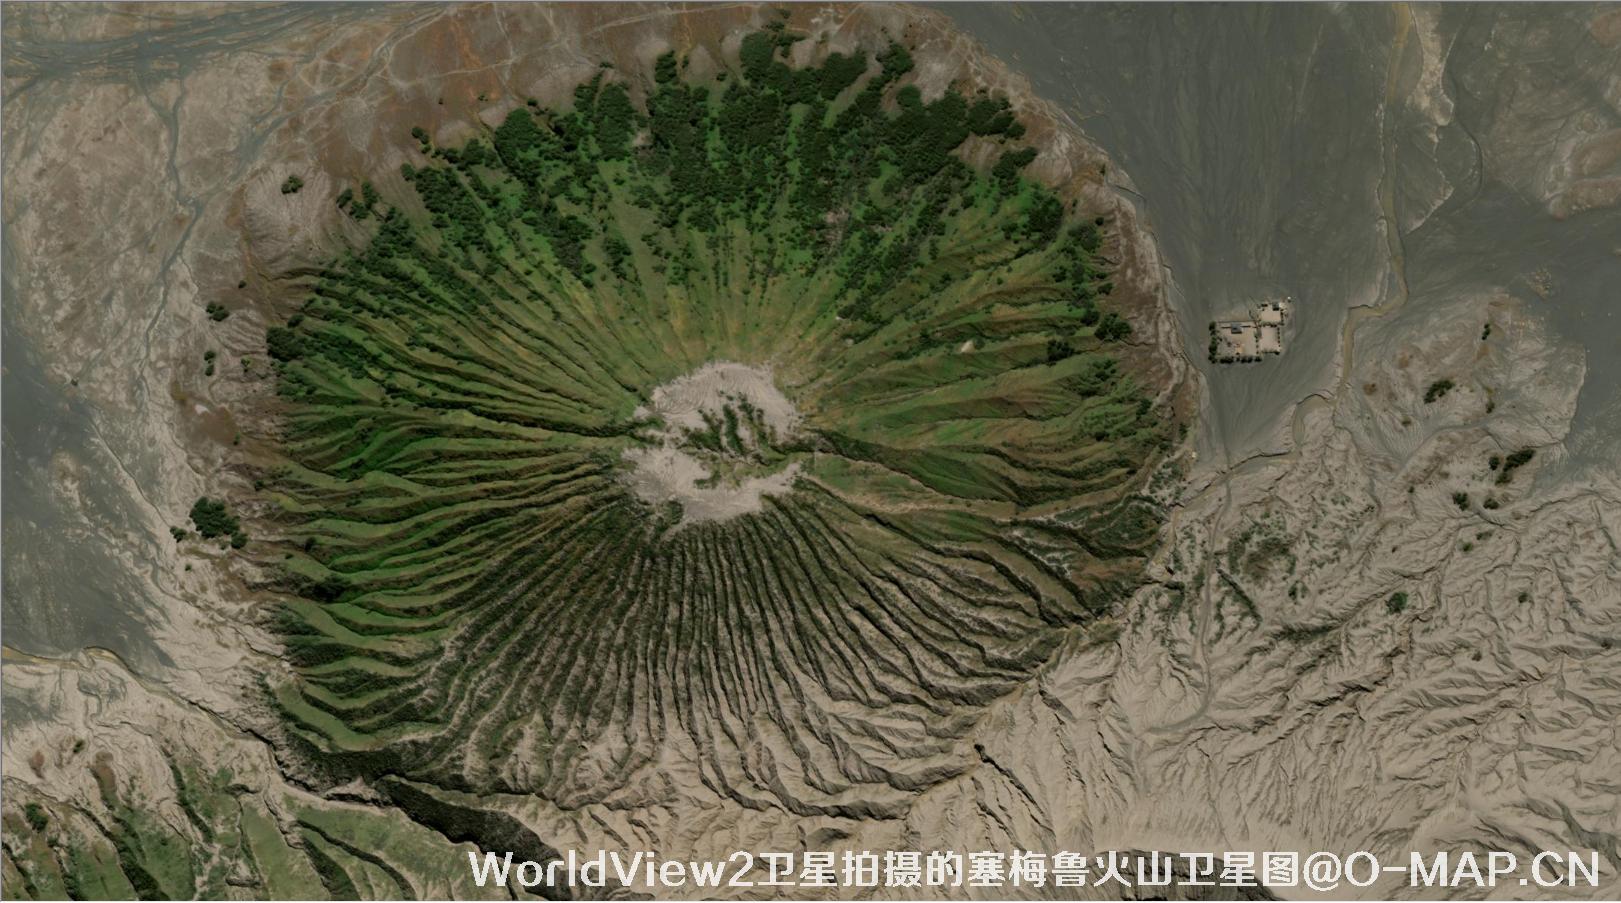  WorldView2卫星2019年拍摄的塞梅鲁火山卫星图